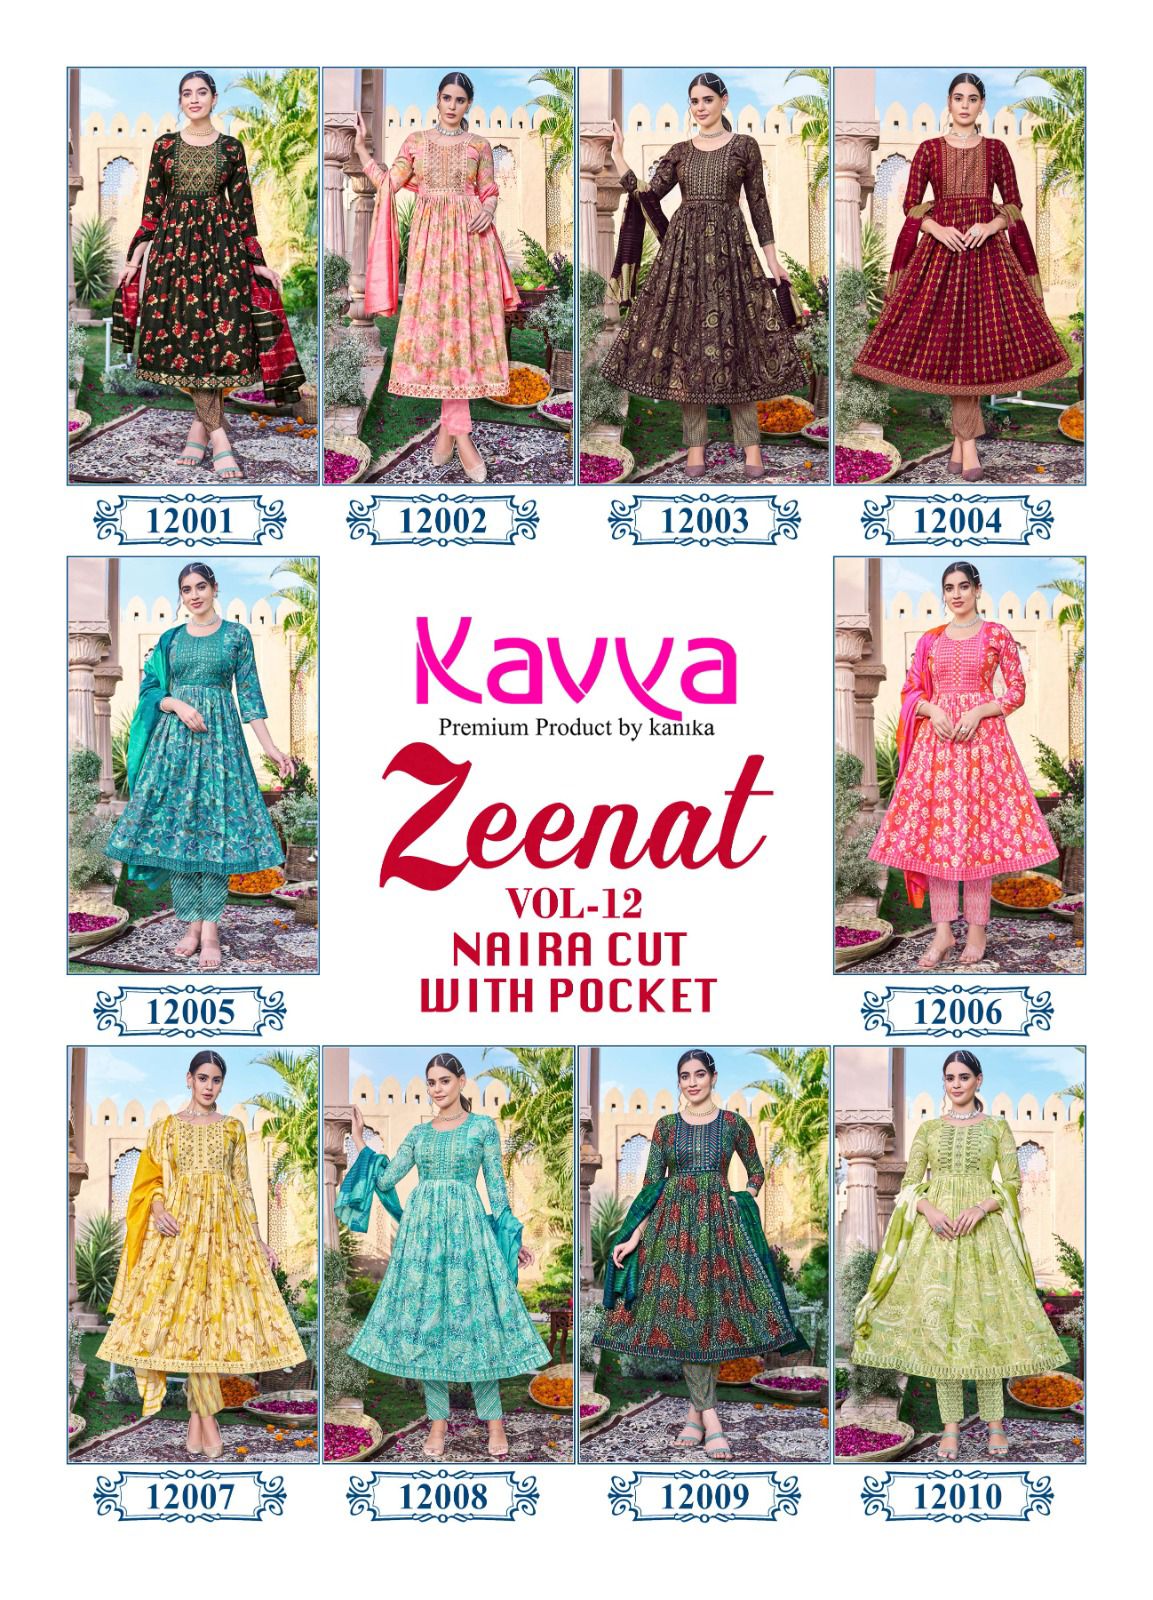 Kavya Zeenat Vol 12 collection 12